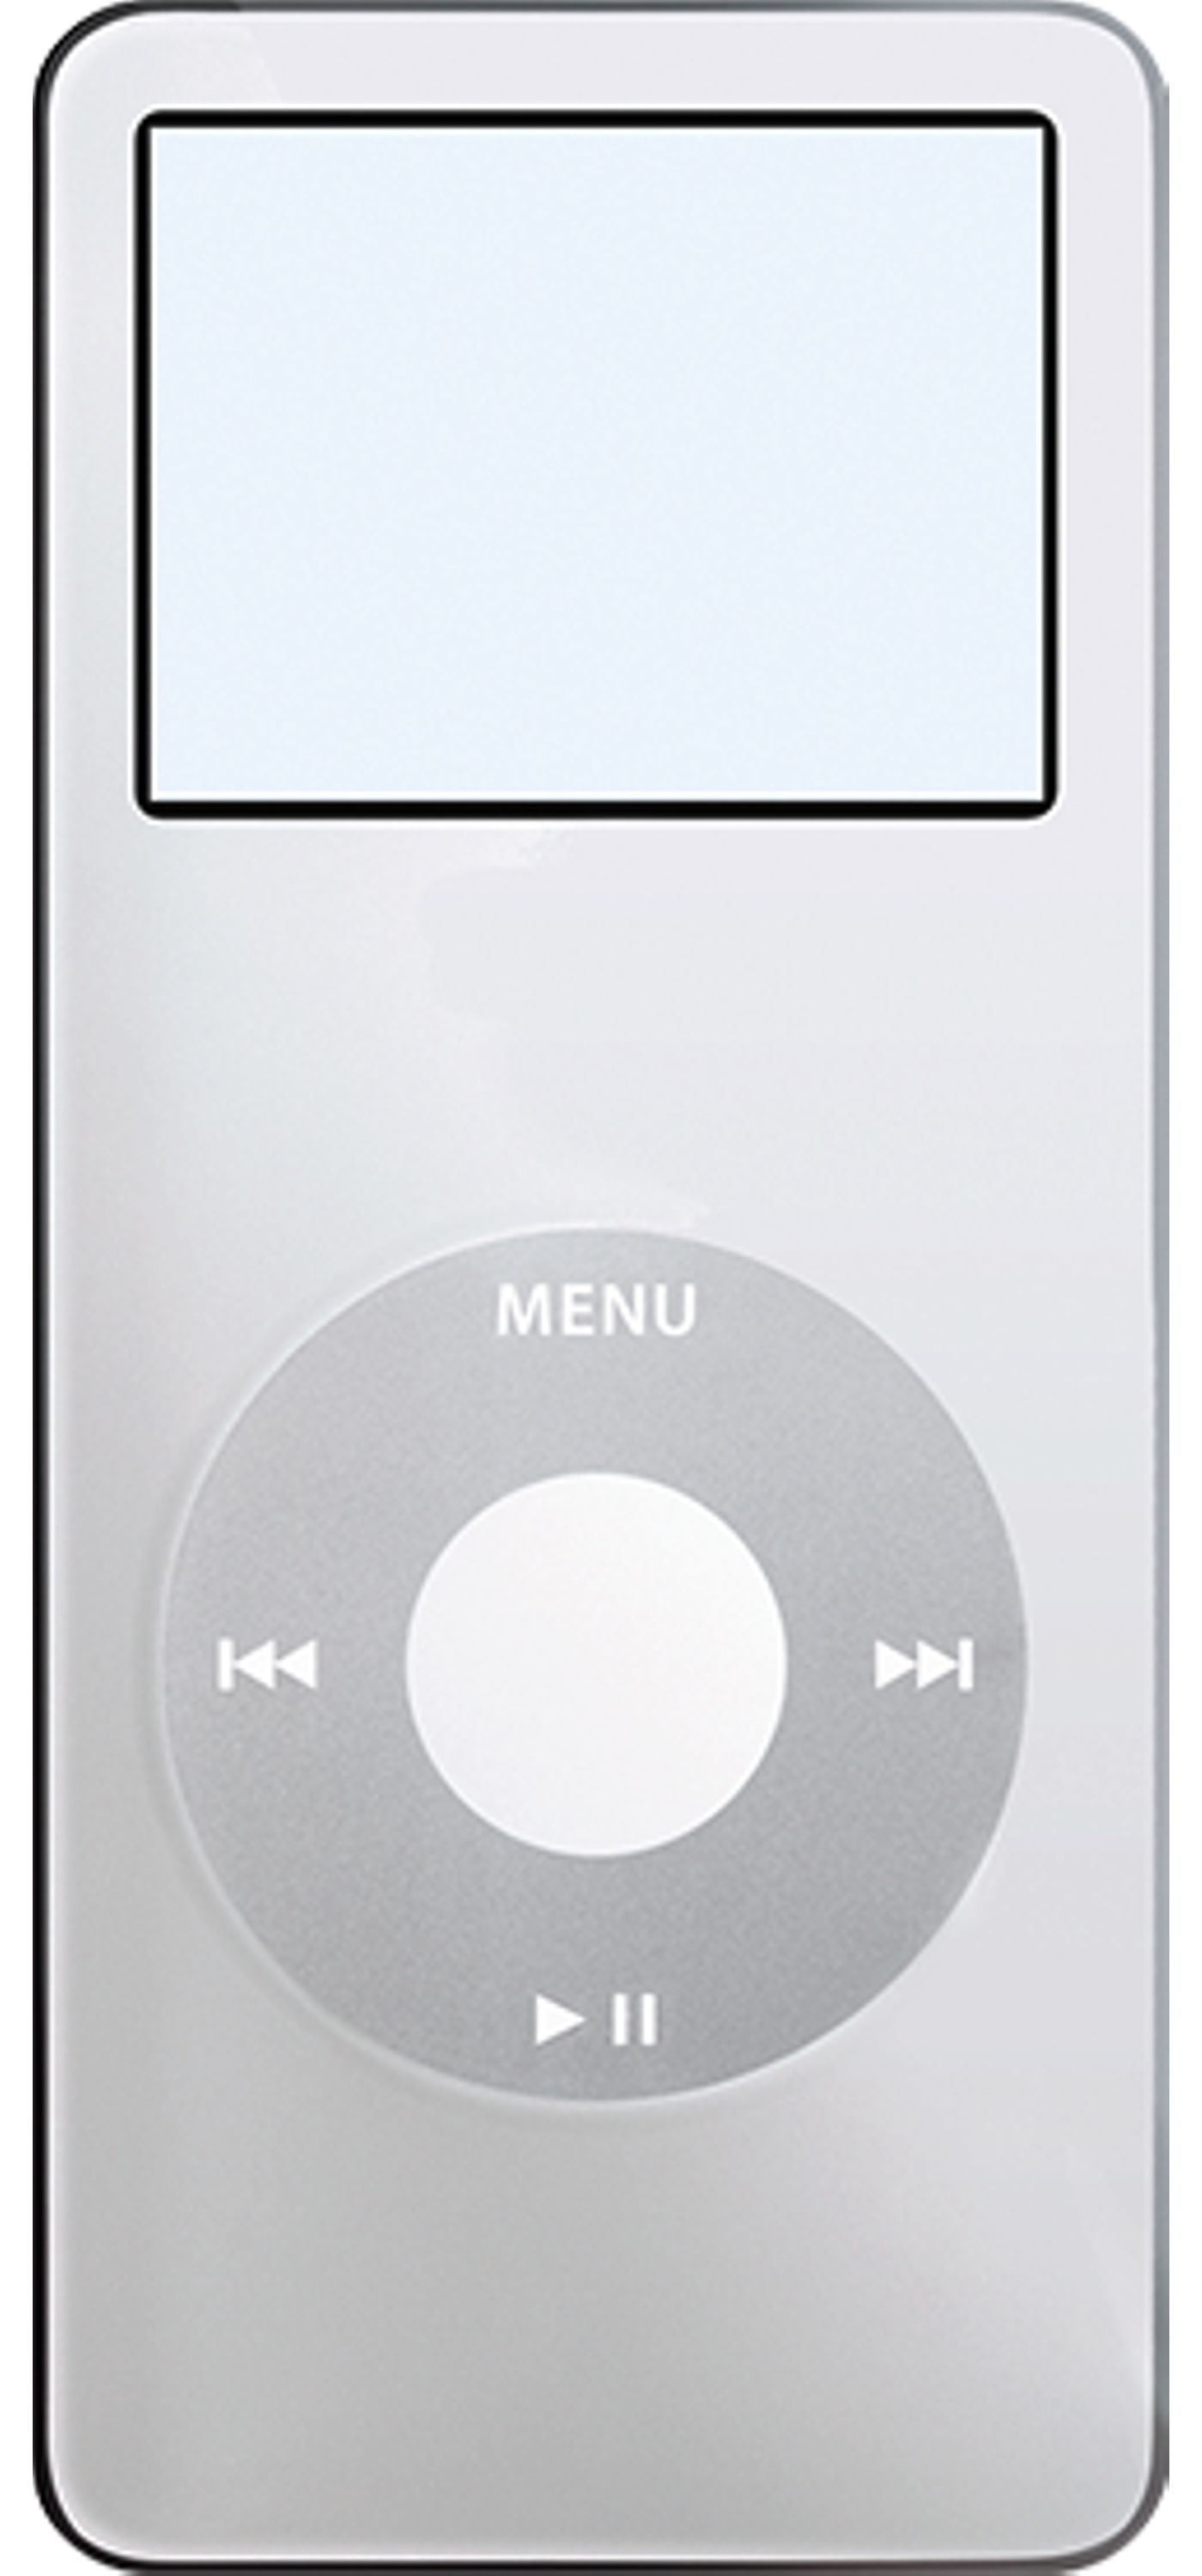 经典落幕，苹果正式淘汰 iPod nano﹨升级新系统后出现异常，苹果建议这样做